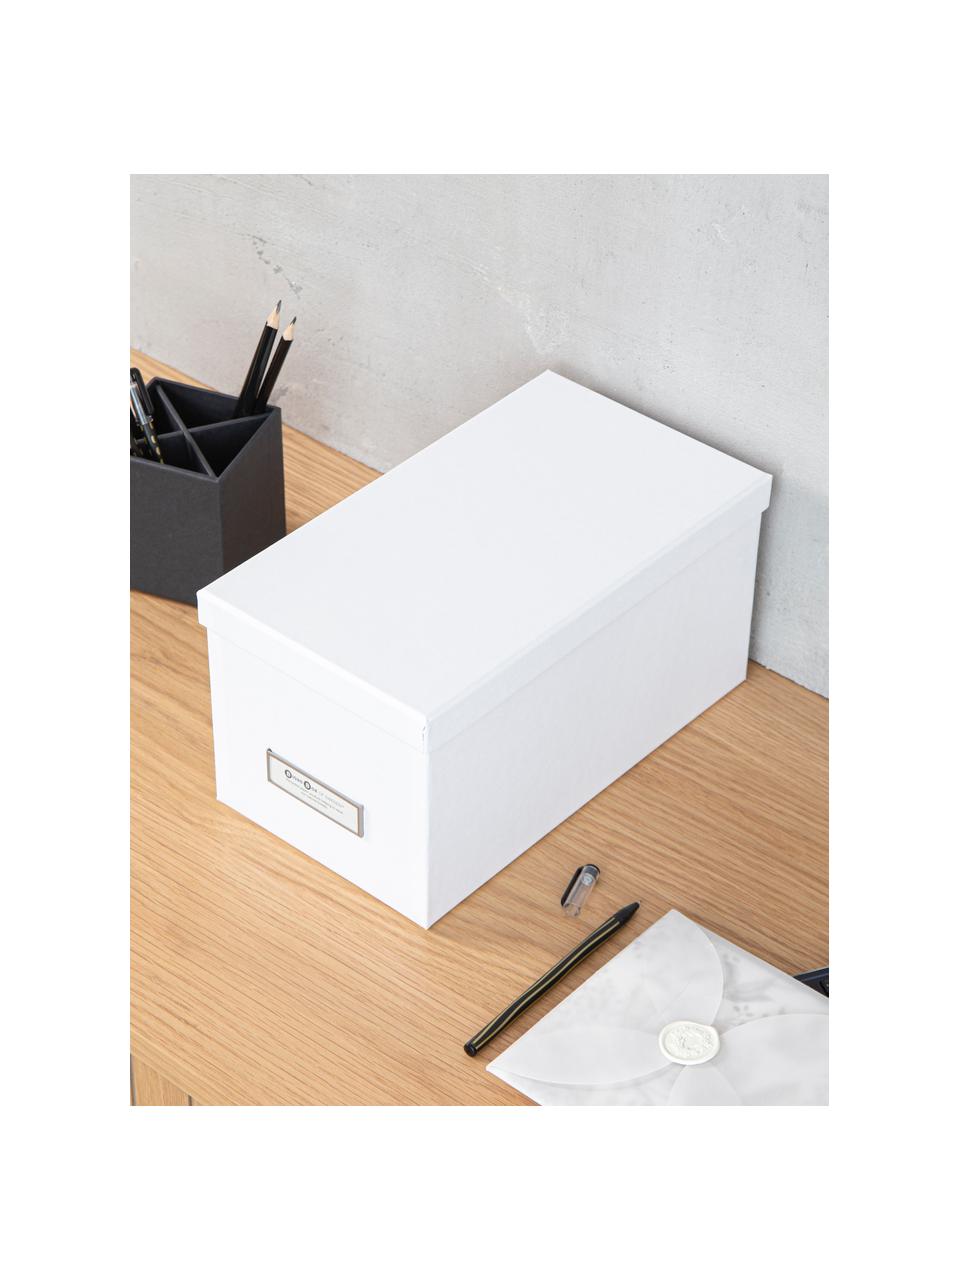 Pudełko do przechowywania Silvia, 2 szt., Biały, S 17 x W 15 cm